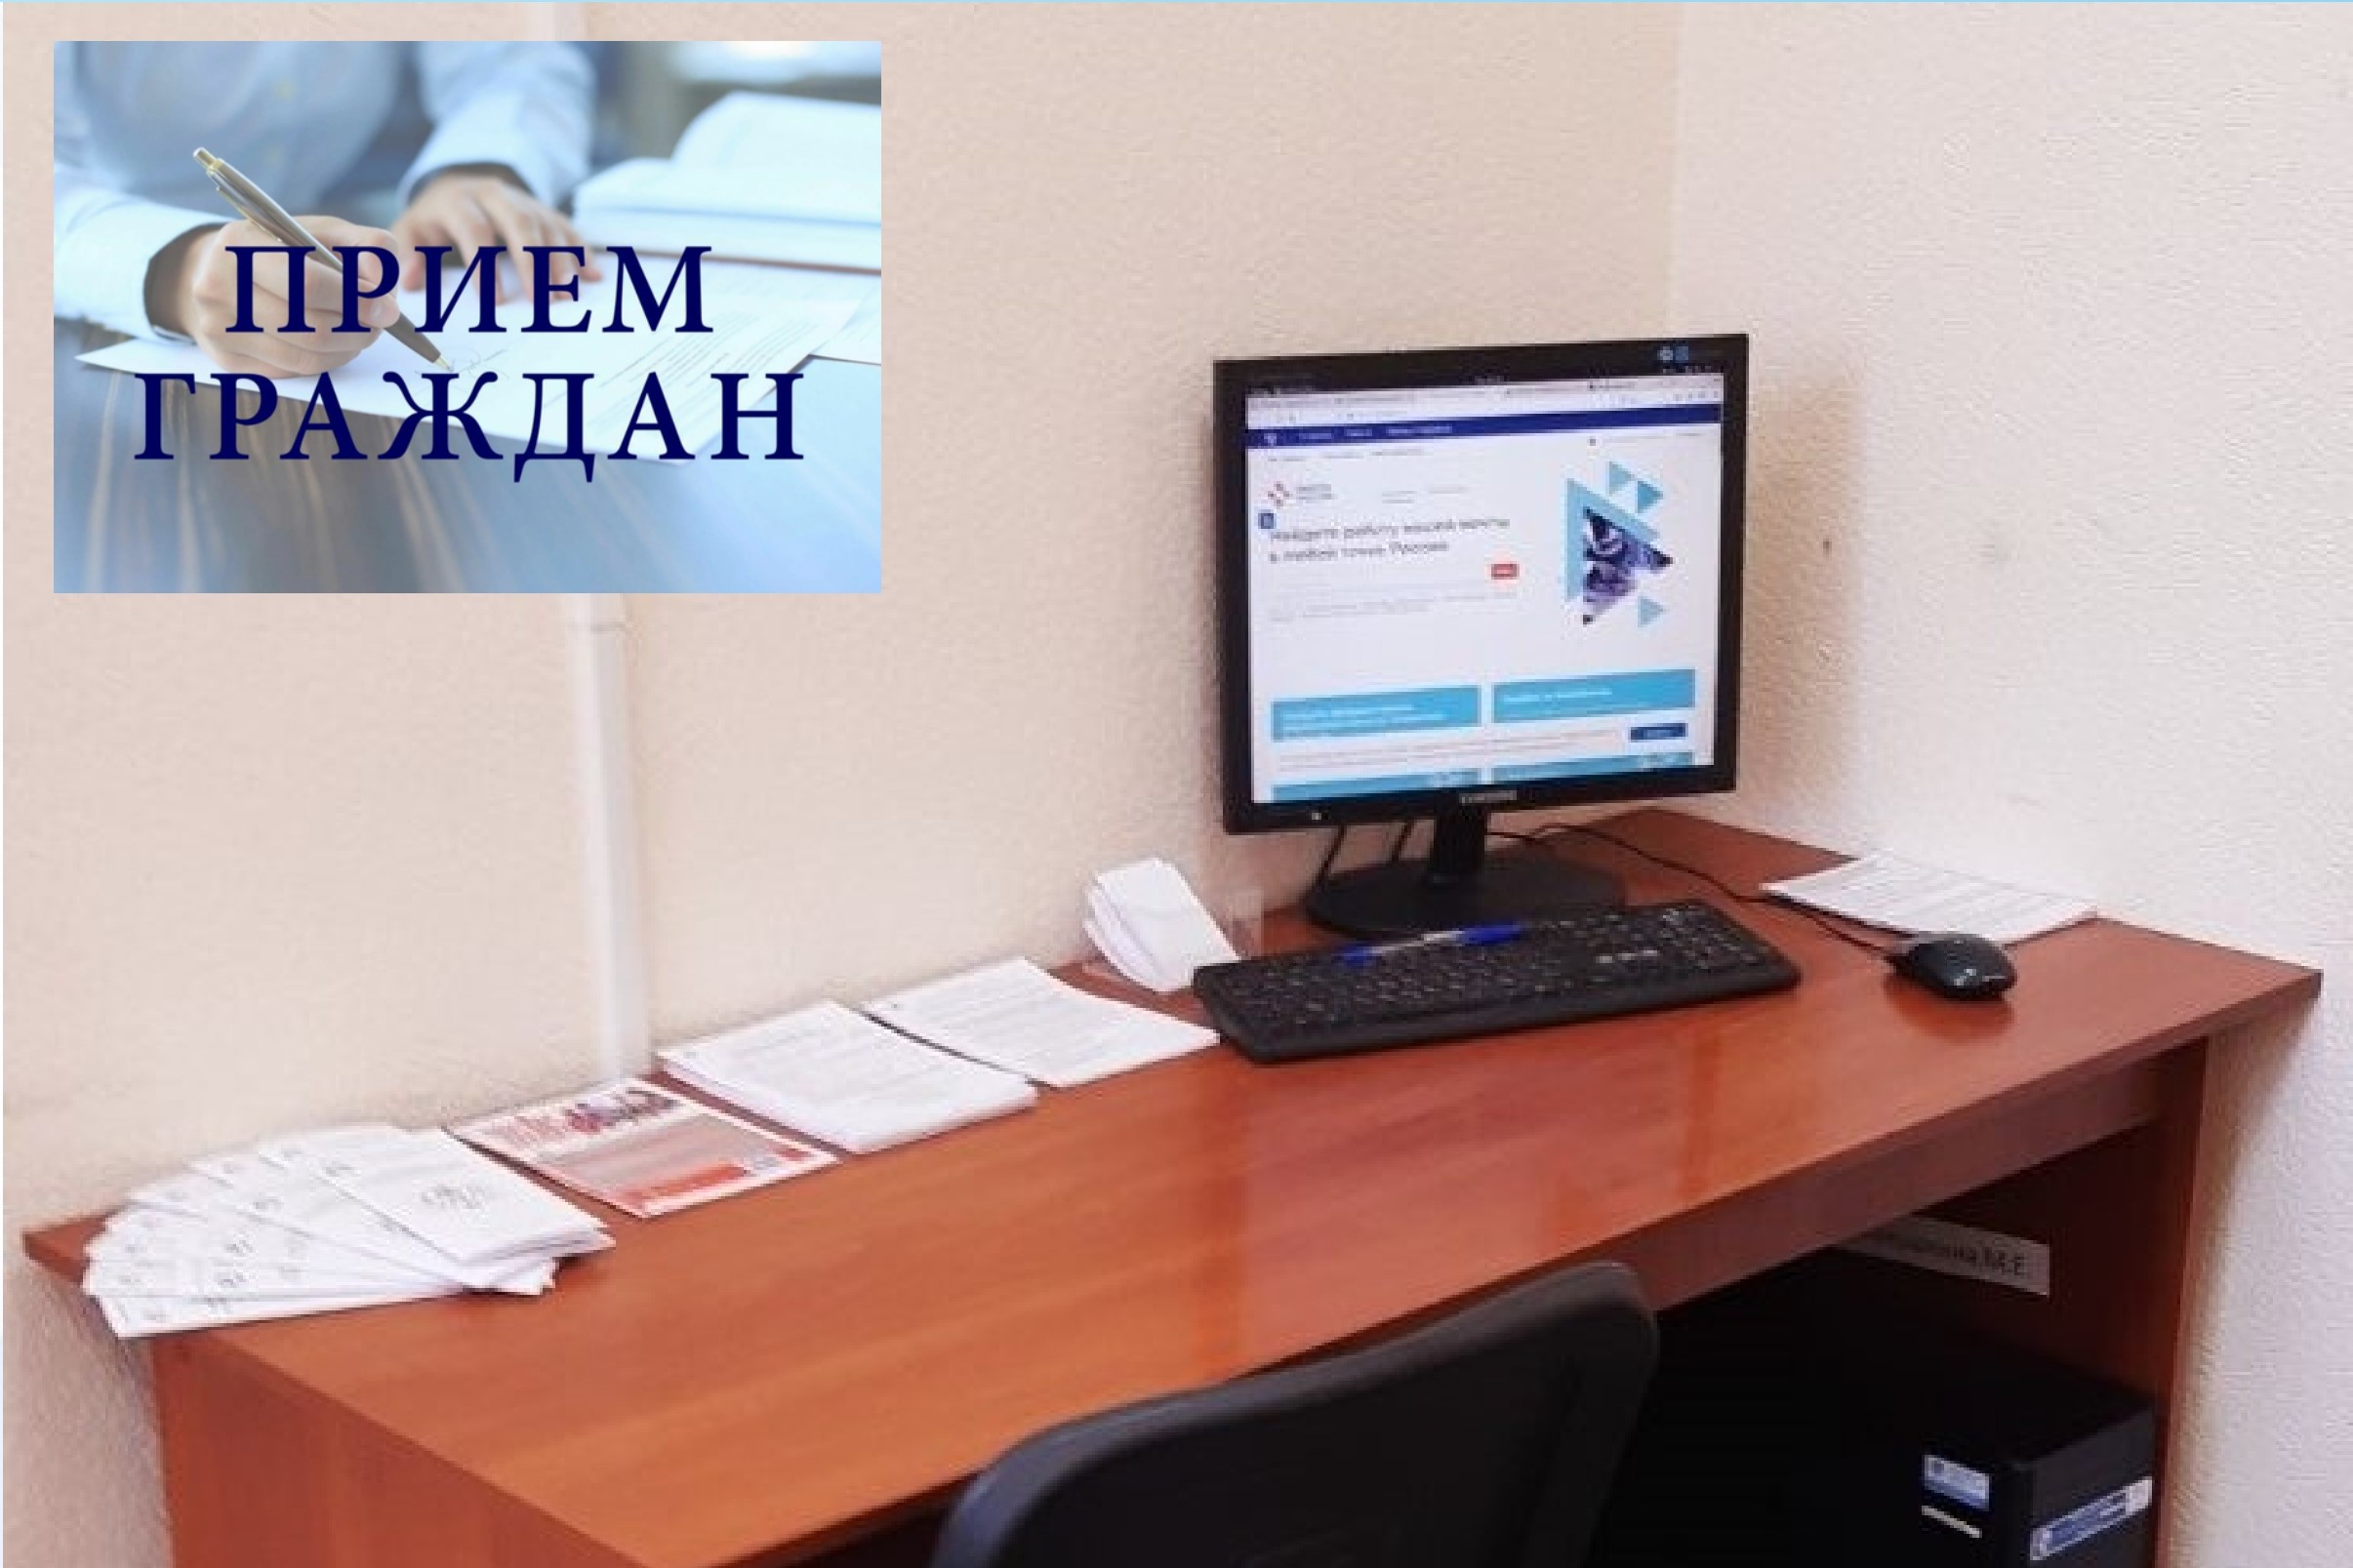 Архангельское отделение занятости организует выездной приём для граждан с инвалидностью